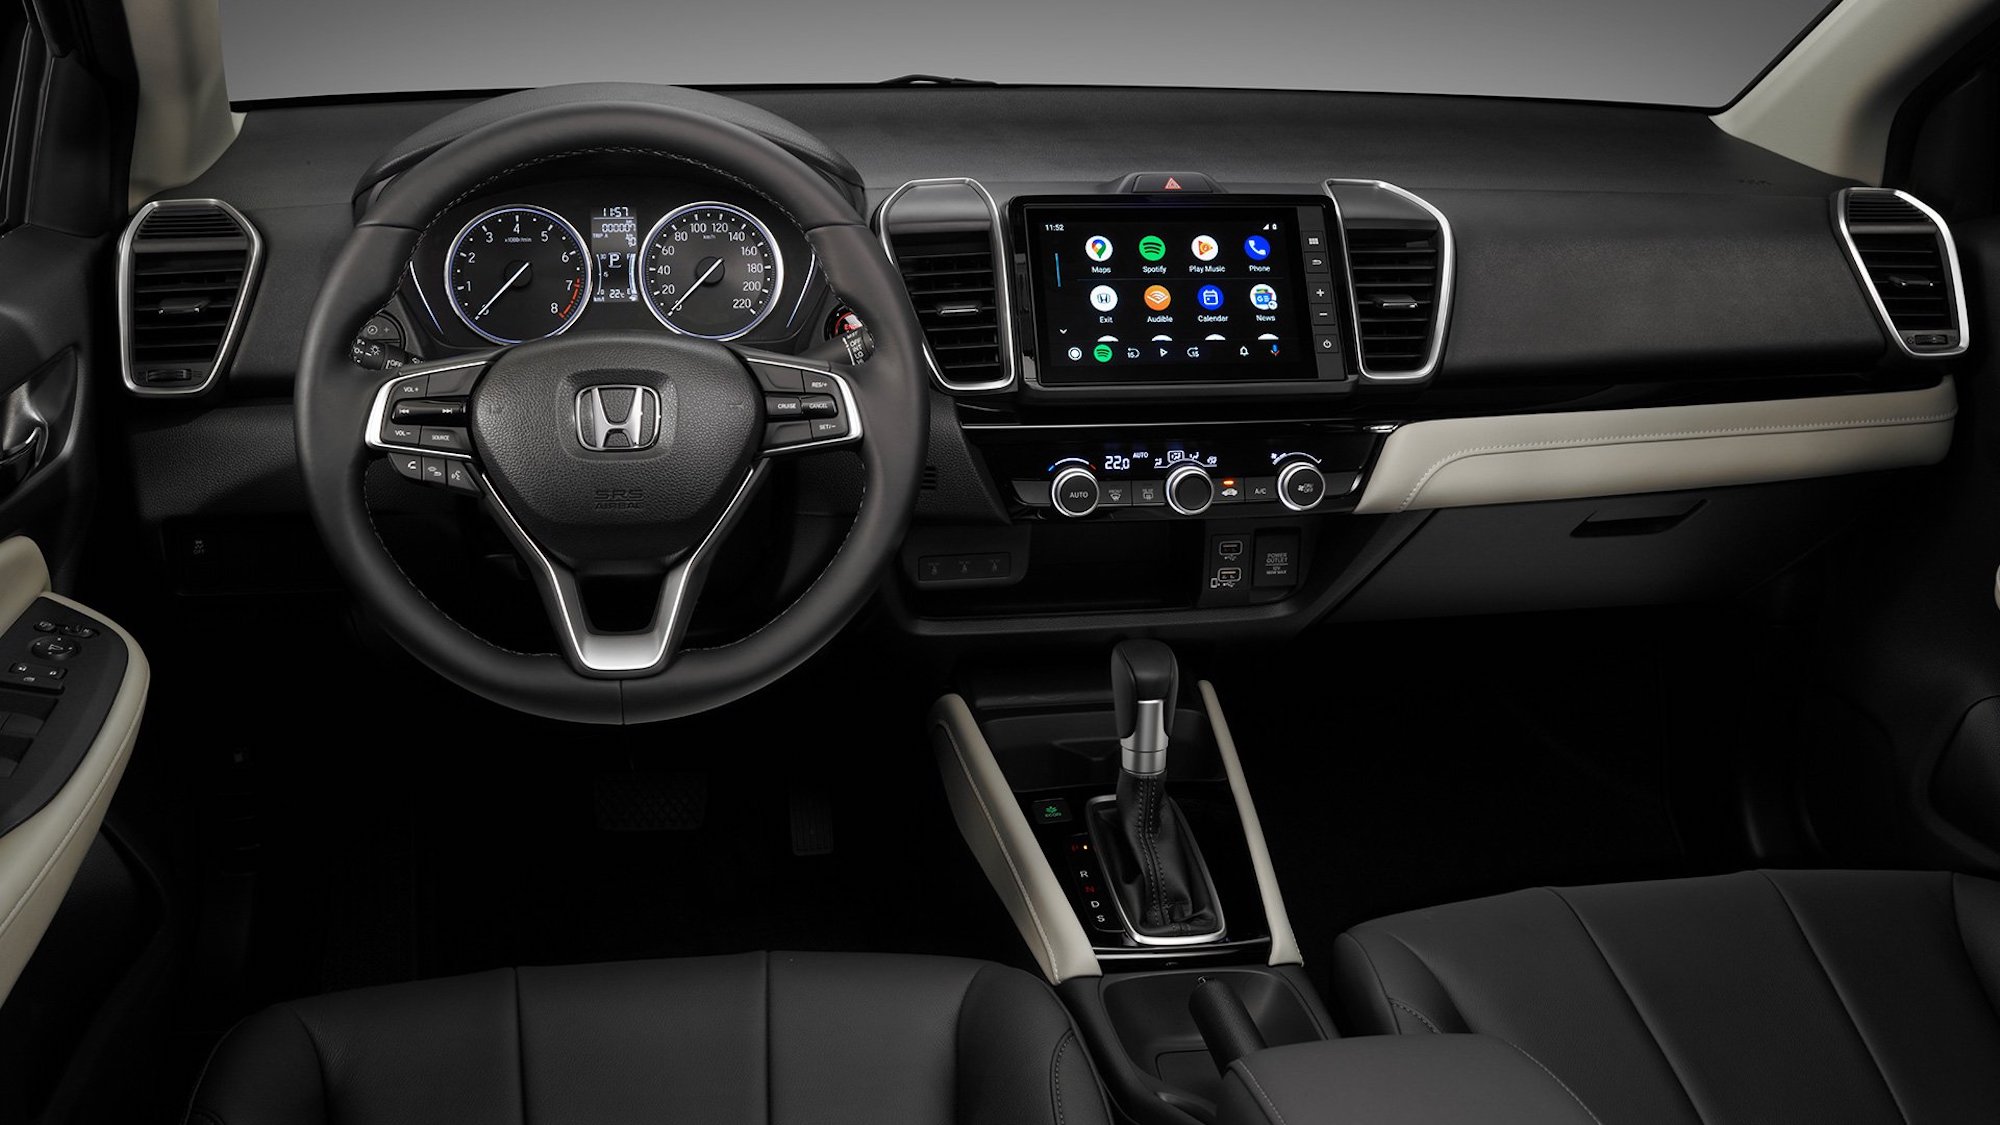 Honda inicia campaña preventiva para reemplazar los airbags de algunos de sus vehículos en Costa Rica